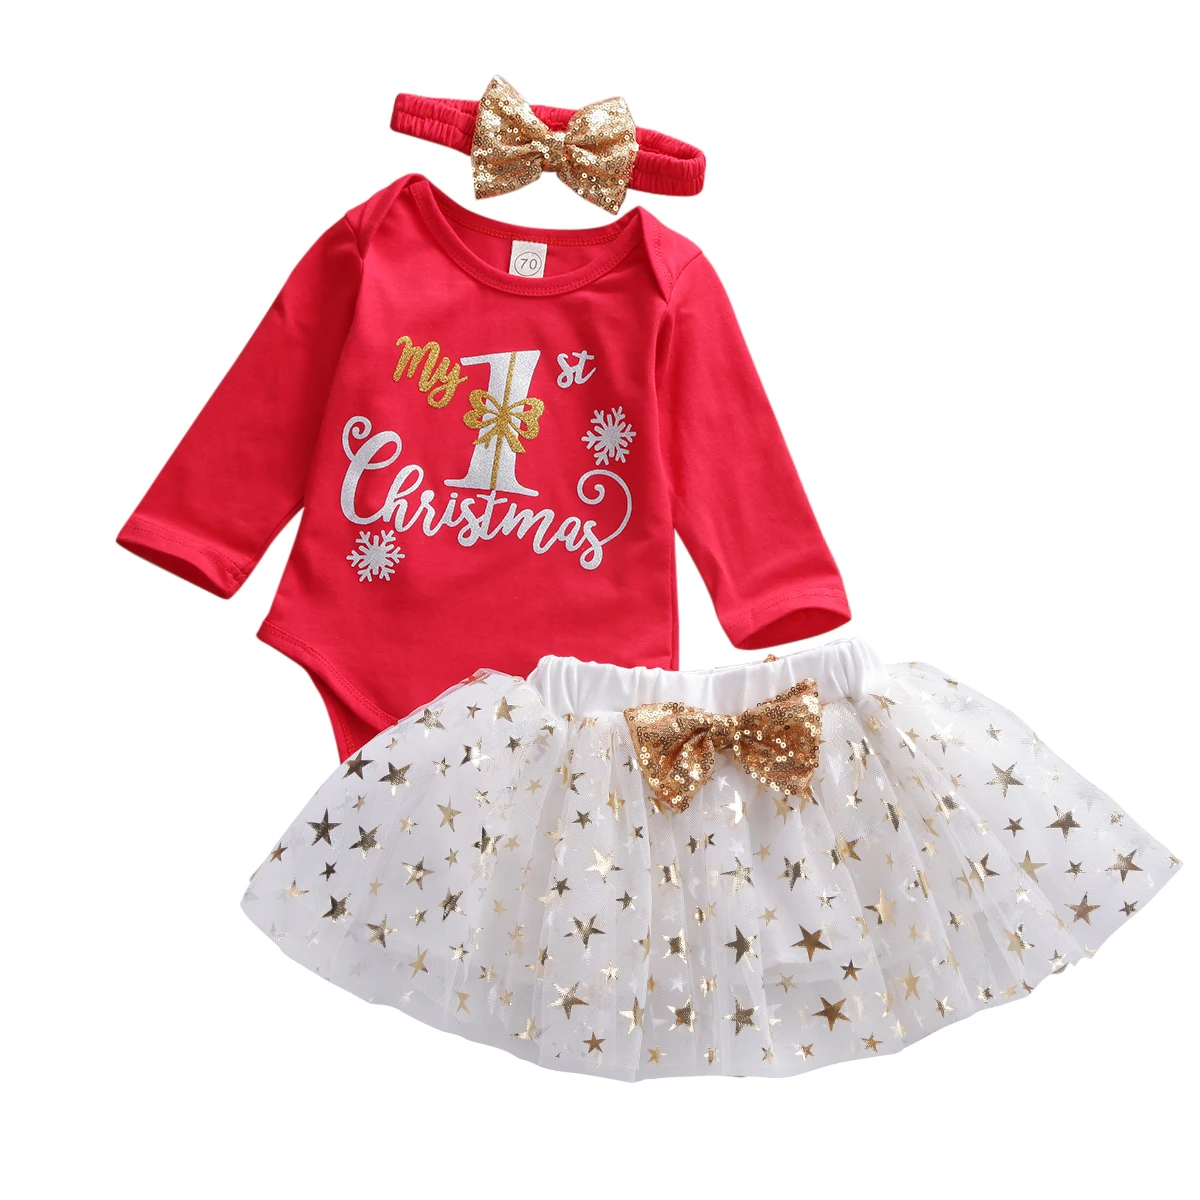 My 1st Christmas/хлопковый боди с длинными рукавами для новорожденных девочек, топы, юбка-пачка с принтом со звездой повязка на голову, комплект рождественской одежды из 3 предметов